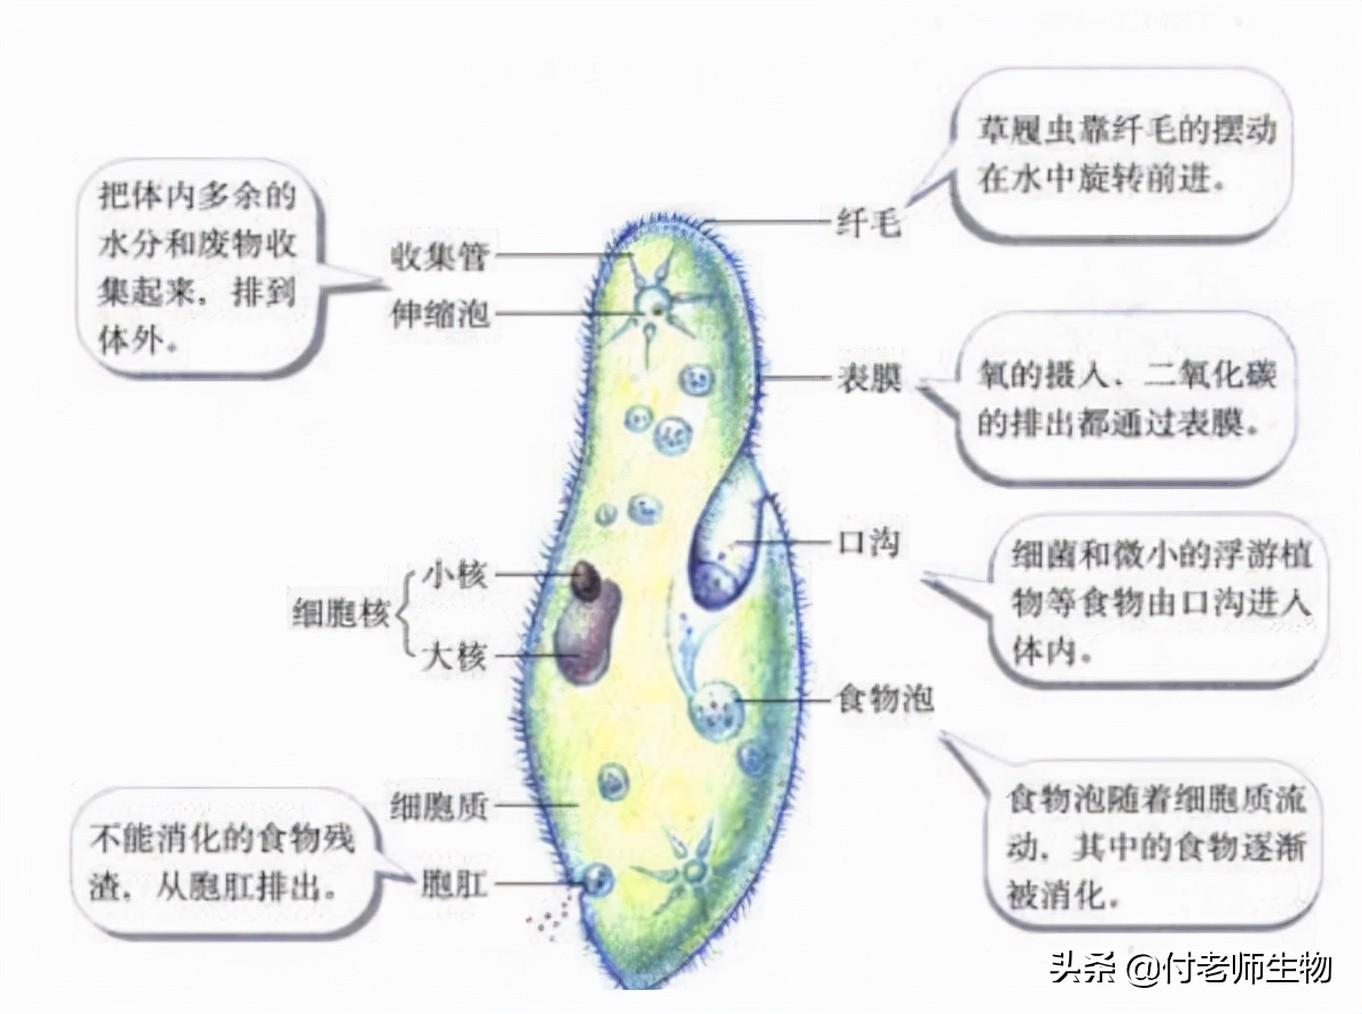 腔肠动物消化腔_水螅消化腔是由什么细胞所围成的空腔_消化腔由什么细胞围成